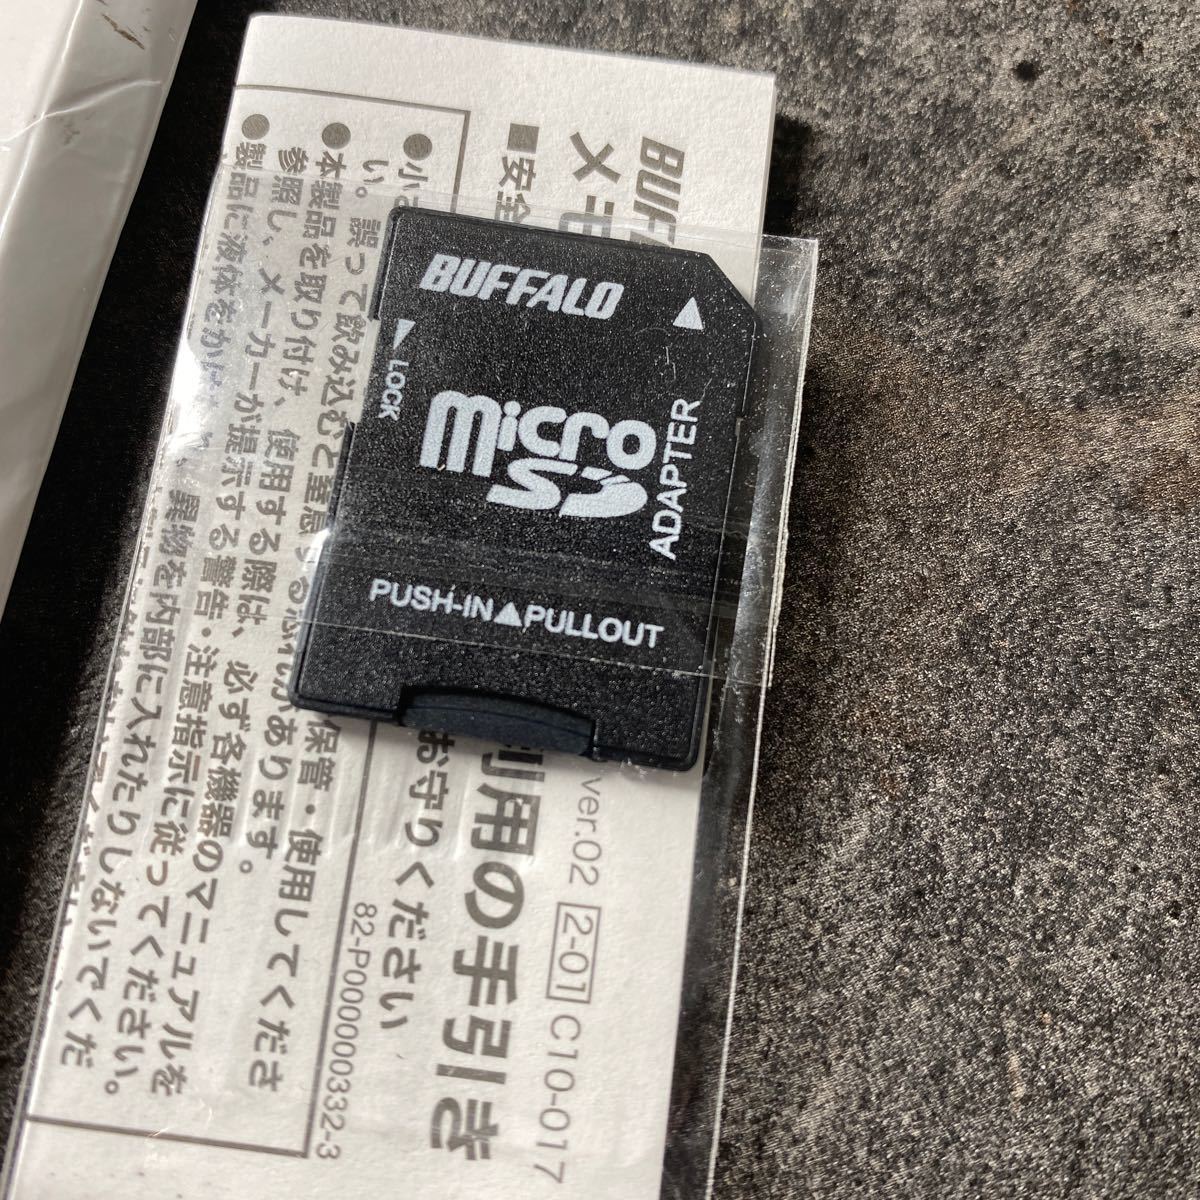 2309164☆ バッファロー microSD 32GB 100MB/s UHS-1 U1 microSDHC【 Nintendo Switch/ドライブレコーダー 対応 】V10 A1 IPX7 Full HD_画像8